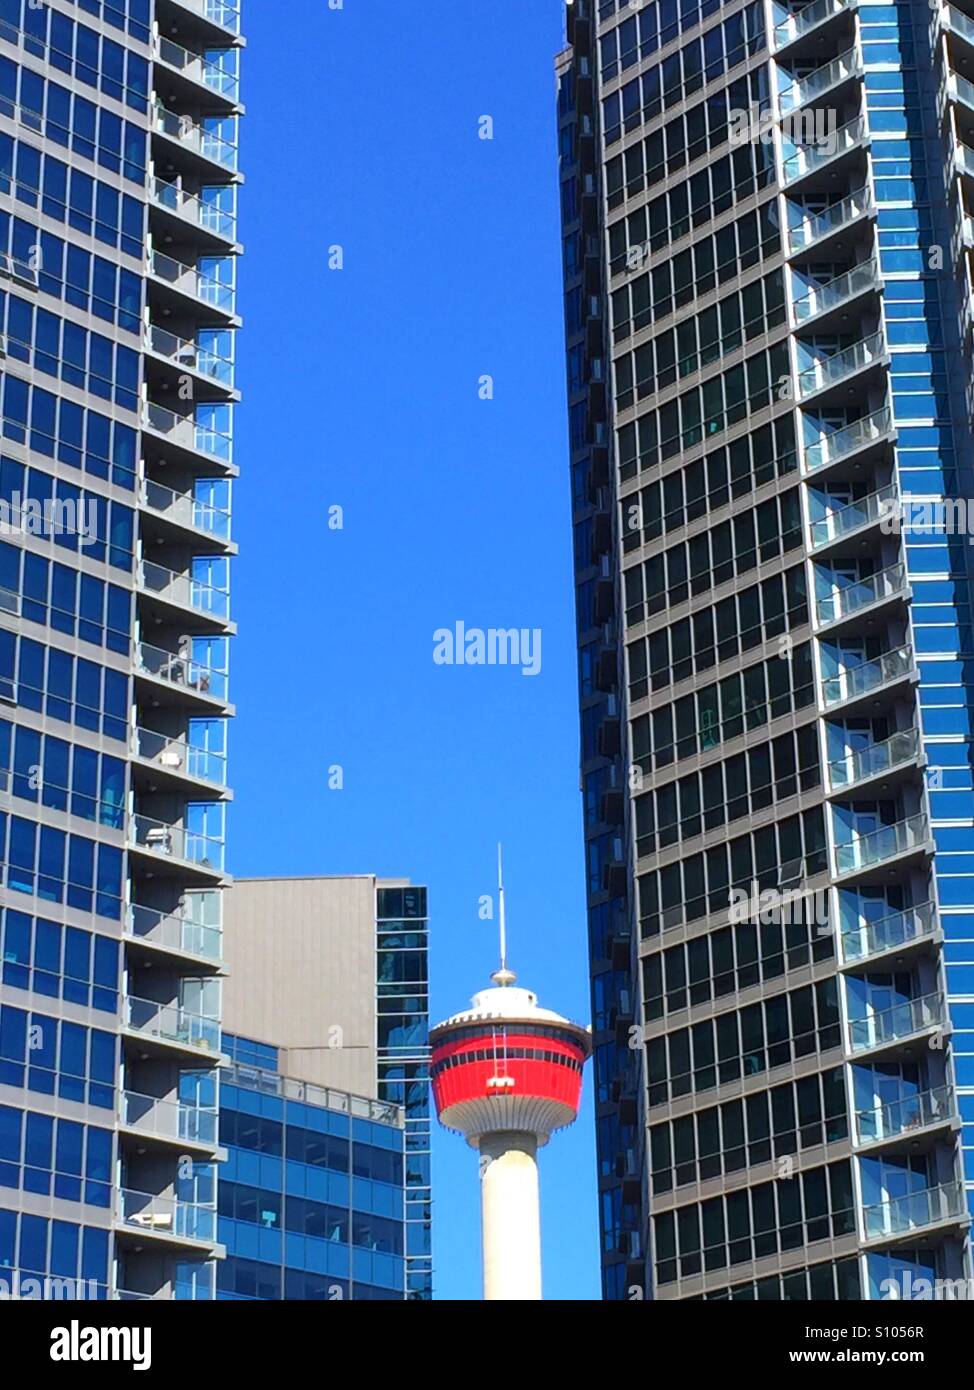 Calgary tower and restaurant Stock Photo